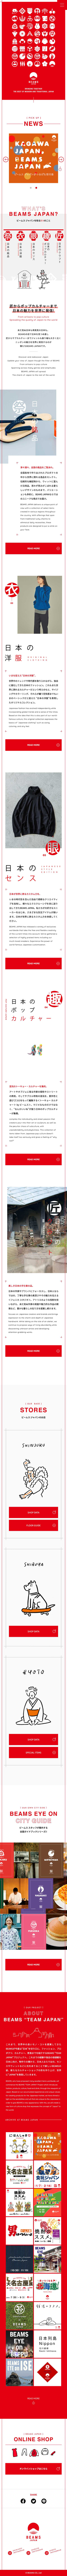 BEAMS JAPAN 公式サイトのモバイルサイズの画像